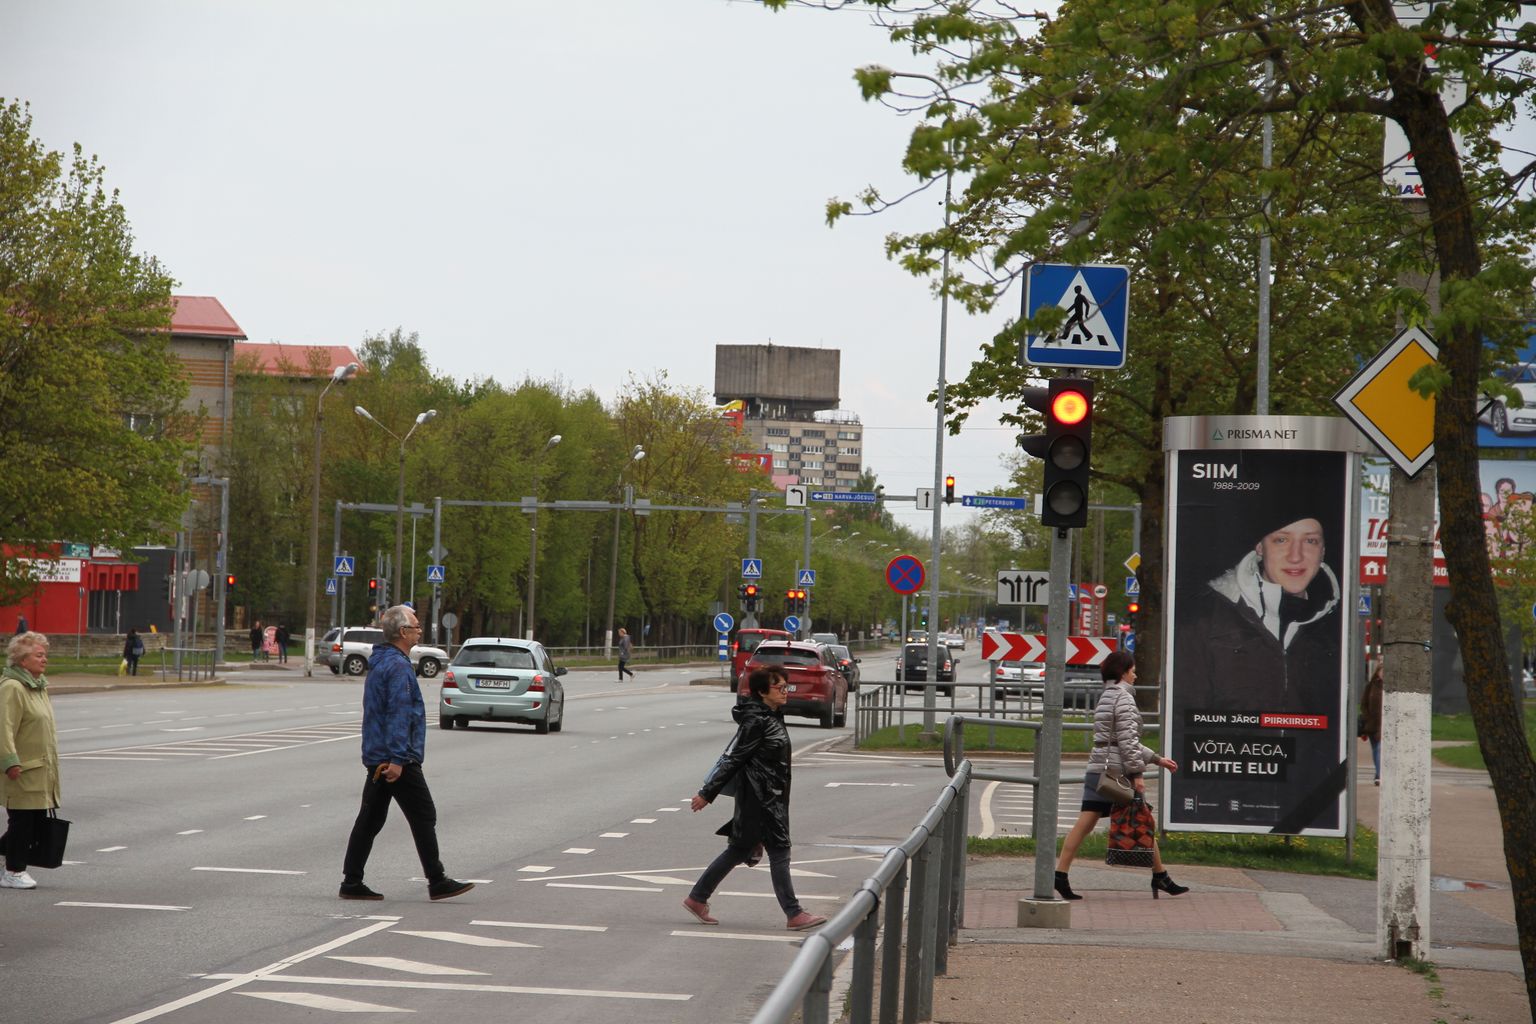 В отличие от парламентских выборов, перед выборами в Европарламент на улицах Нарвы обычная реклама, предвыборной - практически нет.